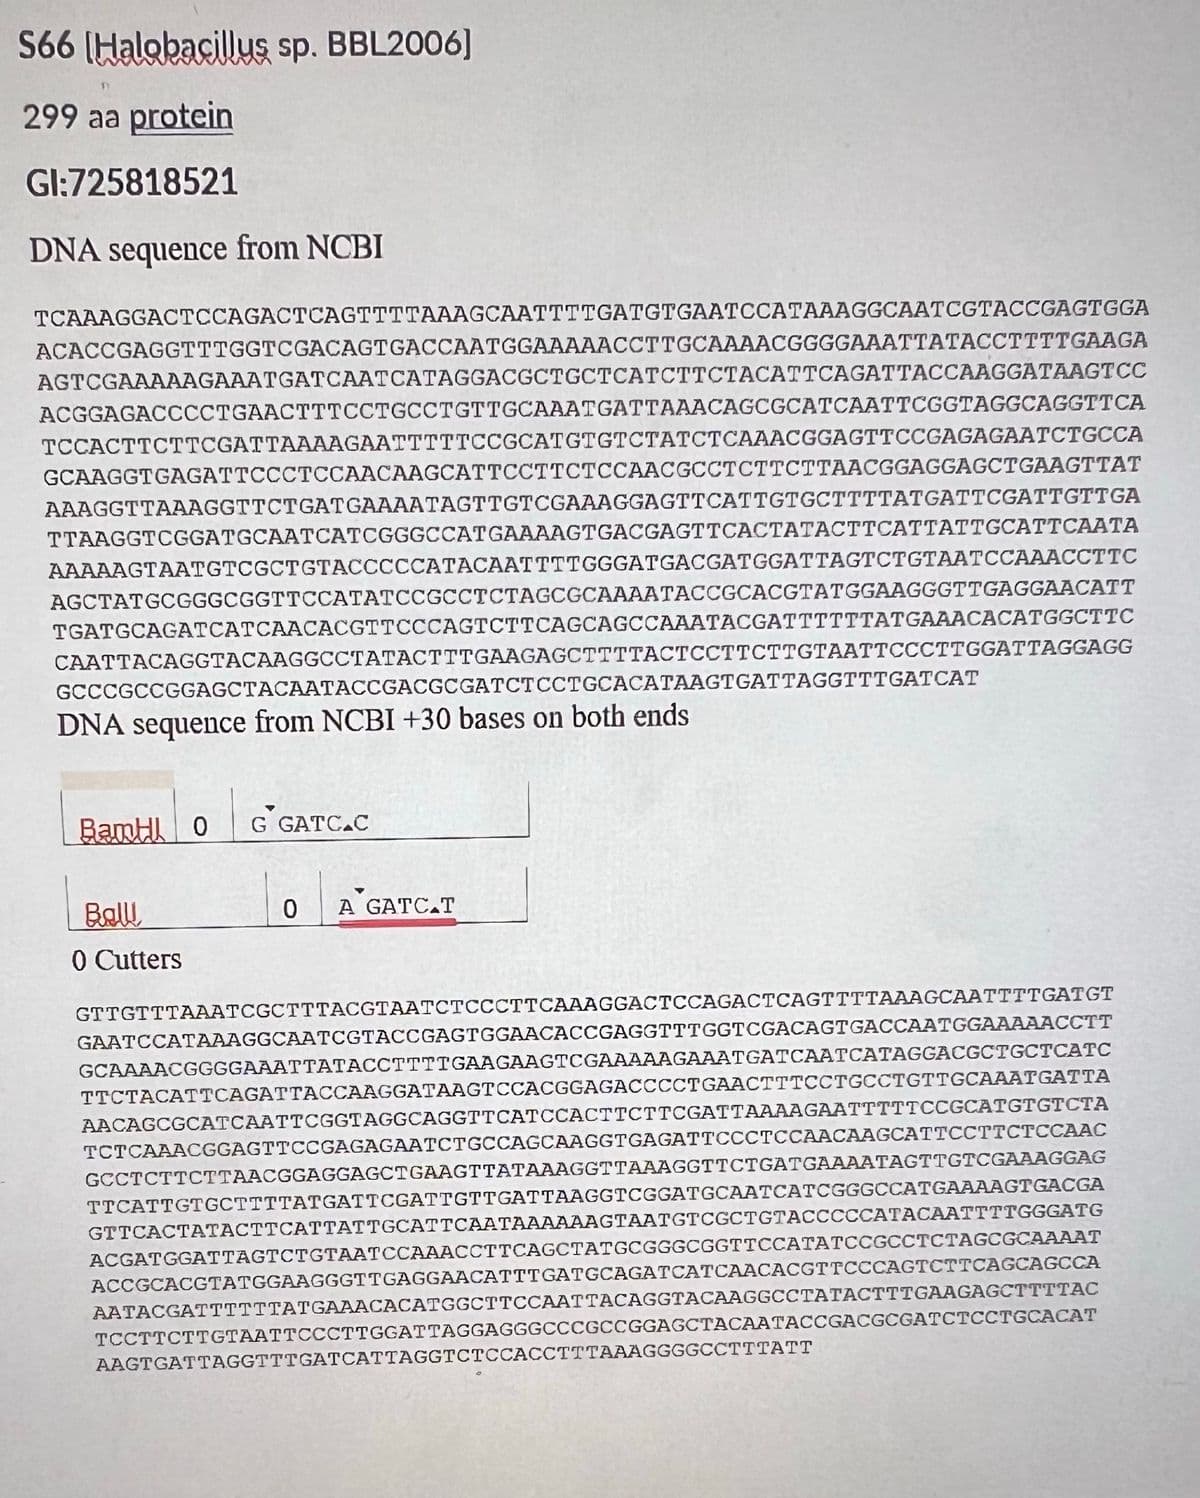 S66 [Halobacillus sp. BBL2006]
299 aa protein
Gl:725818521
DNA sequence from NCBI
TCAAAGGACTCCAGACTCAGTTTTAAAGCAATTTTGATGTGAATCCATAAAGGCAATCGTACCGAGTGGA
ACACCGAGGTTTGGTCGACAGTGACCAATGGAAAAACCTTGCAAAACGGGGAAATTATACCTTTTGAAGA
AGTCGAAAAAGAAATGATCAATCATAGGACGCTGCTCATCTTCTACATTCAGATTACCAAGGATAAGTCC
ACGGAGACCCCTGAACTTTCCTGCCTGTTGCAAATGATTAAACAGCGCATCAATTCGGTAGGCAGGTTCA
TCCACTTCTTCGATTAAAAGAATTTTTCCGCATGTGTCTATCTCAAACGGAGTTCCGAGAGAATCTGCCA
GCAAGGTGAGATTCCCTCCAACAAGCATTCCTTCTCCAACGCCTCTTCTTAACGGAGGAGCTGAAGTTAT
AAAGGTTAAAGGTTCTGATGAAAATAGTTGTCGAAAGGAGTTCATTGTGCTTTTATGATTCGATTGTTGA
TTAAGGTCGGATGCAATCATCGGGCCATGAAAAGTGACGAGTTCACTATACTTCATTATTGCATTCAATA
AAAAAGTAATGTCGCTGTACCCCCATACAATTTTGGGATGACGATGGATTAGTCTGTAATCCAAACCTTC
AGCTATGCGGGCGGTTCCATATCCGCCTCTAGCGCAAAATACCGCACGTATGGAAGGGTTGAGGAACATT
TGATGCAGATCATCAACACGTTCCCAGTCTTCAGCAGCCAAATACGATTTTTTATGAAACACATGGCTTC
CAATTACAGGTACAAGGCCTATACTTTGAAGAGCTTTTACTCCTTCTTGTAATTCCCTTGGATTAGGAGG
GCCCGCCGGAGCTACAATACCGACGCGATCTCCTGCACATAAGTGATTAGGTTTGATCAT
DNA sequence from NCBI +30 bases on both ends
BamHI O
Ball
0 Cutters
G GATC.C
0 A GATC T
GTTGTTTAAATCGCTTTACGTAATCTCCCTTCAAAGGACTCCAGACTCAGTTTTAAAGCAATTTTGATGT
GAATCCATAAAGGCAATCGTACCGAGTGGAACACCGAGGTTTGGTCGACAGTGACCAATGGAAAAACCTT
GCAAAACGGGGAAATTATACCTTTTGAAGAAGTCGAAAAAGAAATGATCAATCATAGGACGCTGCTCATC
TTCTACATTCAGATTACCAAGGATAAGTCCACGGAGACCCCT GAACTTTCCTGCCTGTTGCAAATGATTA
AACAGCGCATCAATTCGGTAGGCAGGTTCATCCACTTCTTCGATTAAAAGAATTTTTCCGCATGTGTCTA
TCTCAAACGGAGTTCCGAGAGAATCTGCCAGCAAGGTGAGATTCCCTCCAACAAGCATTCCTTCTCCAAC
GCCTCTTCTTAACGGAGGAGCTGAAGTTATAAAGGTTAAAGGTTCTGATGAAAATAGTTGTCGAAAGGAG
TTCATTGTGCTTTTATGATTCGATTGTTGATTAAGGTCGGATGCAATCATCGGGCCATGAAAAGTGACGA
GTTCACTATACTTCATTATTGCATTCAATAAAAAAGTAATGTCGCTGTACCCCCATACAATTTTGGGATG
ACGATGGATTAGTCTGTAATCCAAACCTTCAGCTATGCGGGCGGTTCCATATCCGCCTCTAGCGCAAAAT
ACCGCACGTATGGAAGGGTTGAGGAACATTTGATGCAGATCATCAACACGTTCCCAGTCTTCAGCAGCCA
AATACGATTTTTTATGAAACACATGGCTTCCAATTACAGGTACAAGGCCTATACTTTGAAGAGCTTTTAC
TCCTTCTTGTAATTCCCTTGGATTAGGAGGGCCCGCCGGAGCTACAATACCGACGCGATCTCCTGCACAT
AAGTGATTAGGTTTGATCATTAGGTCTCCACCTTTAAAGGGGCCTTTATT